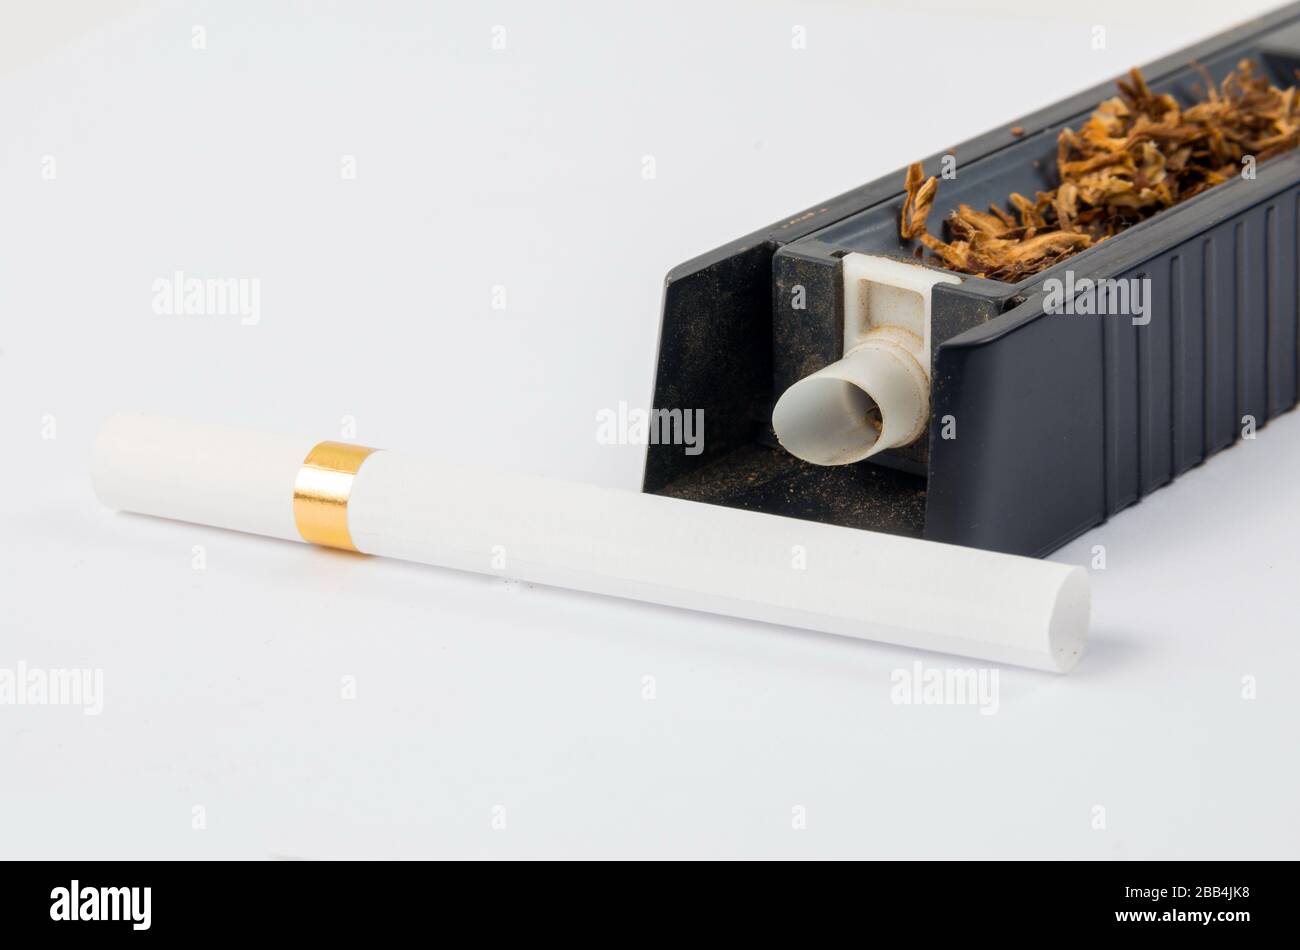 https://c8.alamy.com/compes/2bb4jk8/maquina-de-hacer-cigarrillos-de-tabaco-en-el-blanco-2bb4jk8.jpg